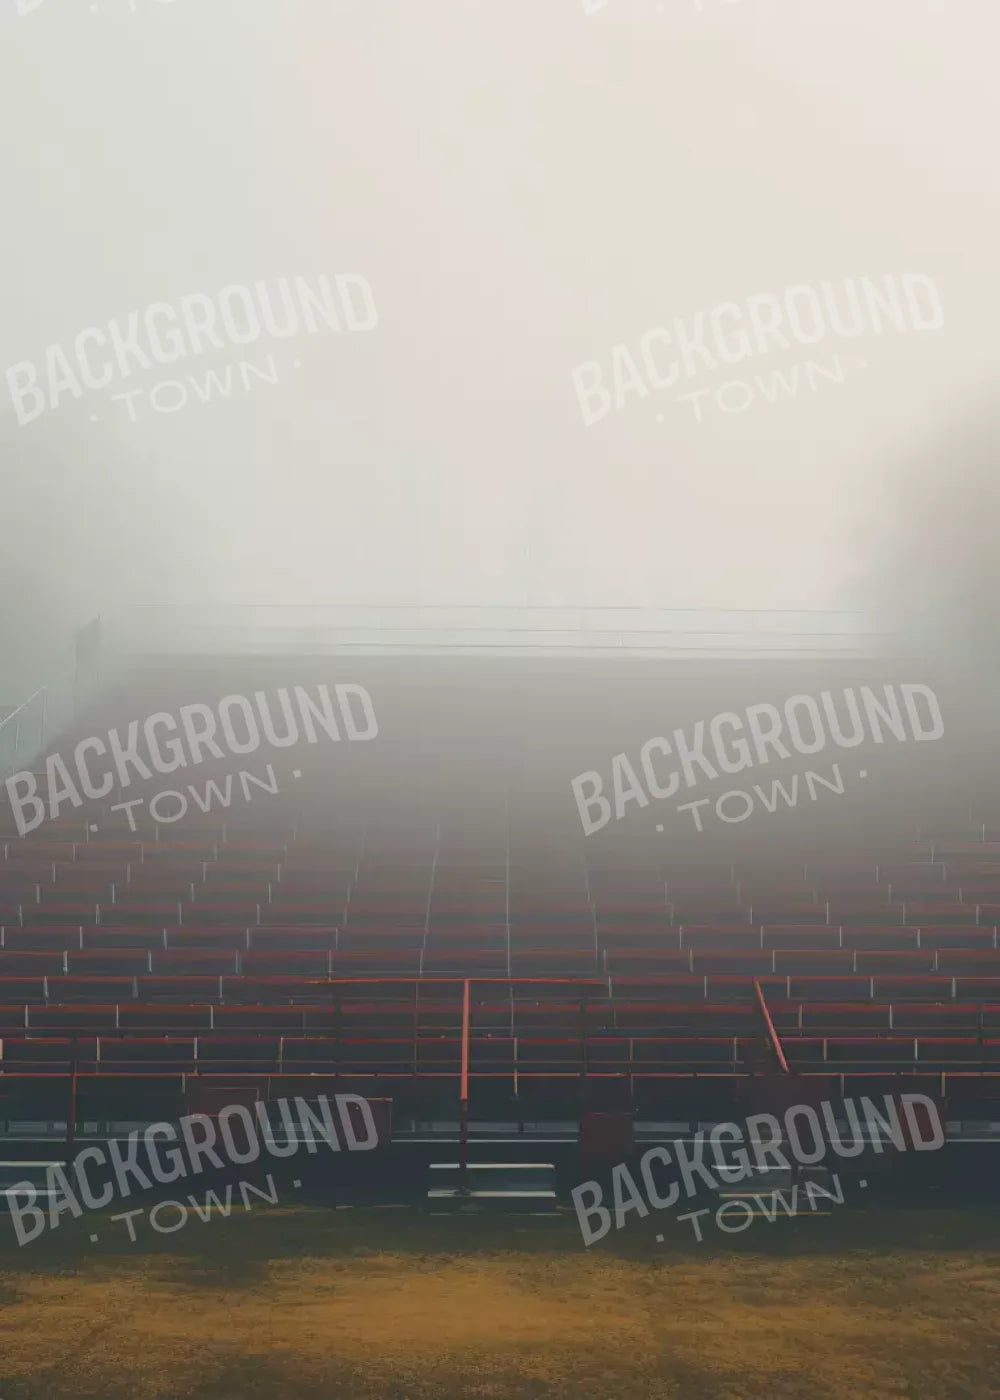 Sports Stadium Seats Iii 5’X7’ Ultracloth (60 X 84 Inch) Backdrop